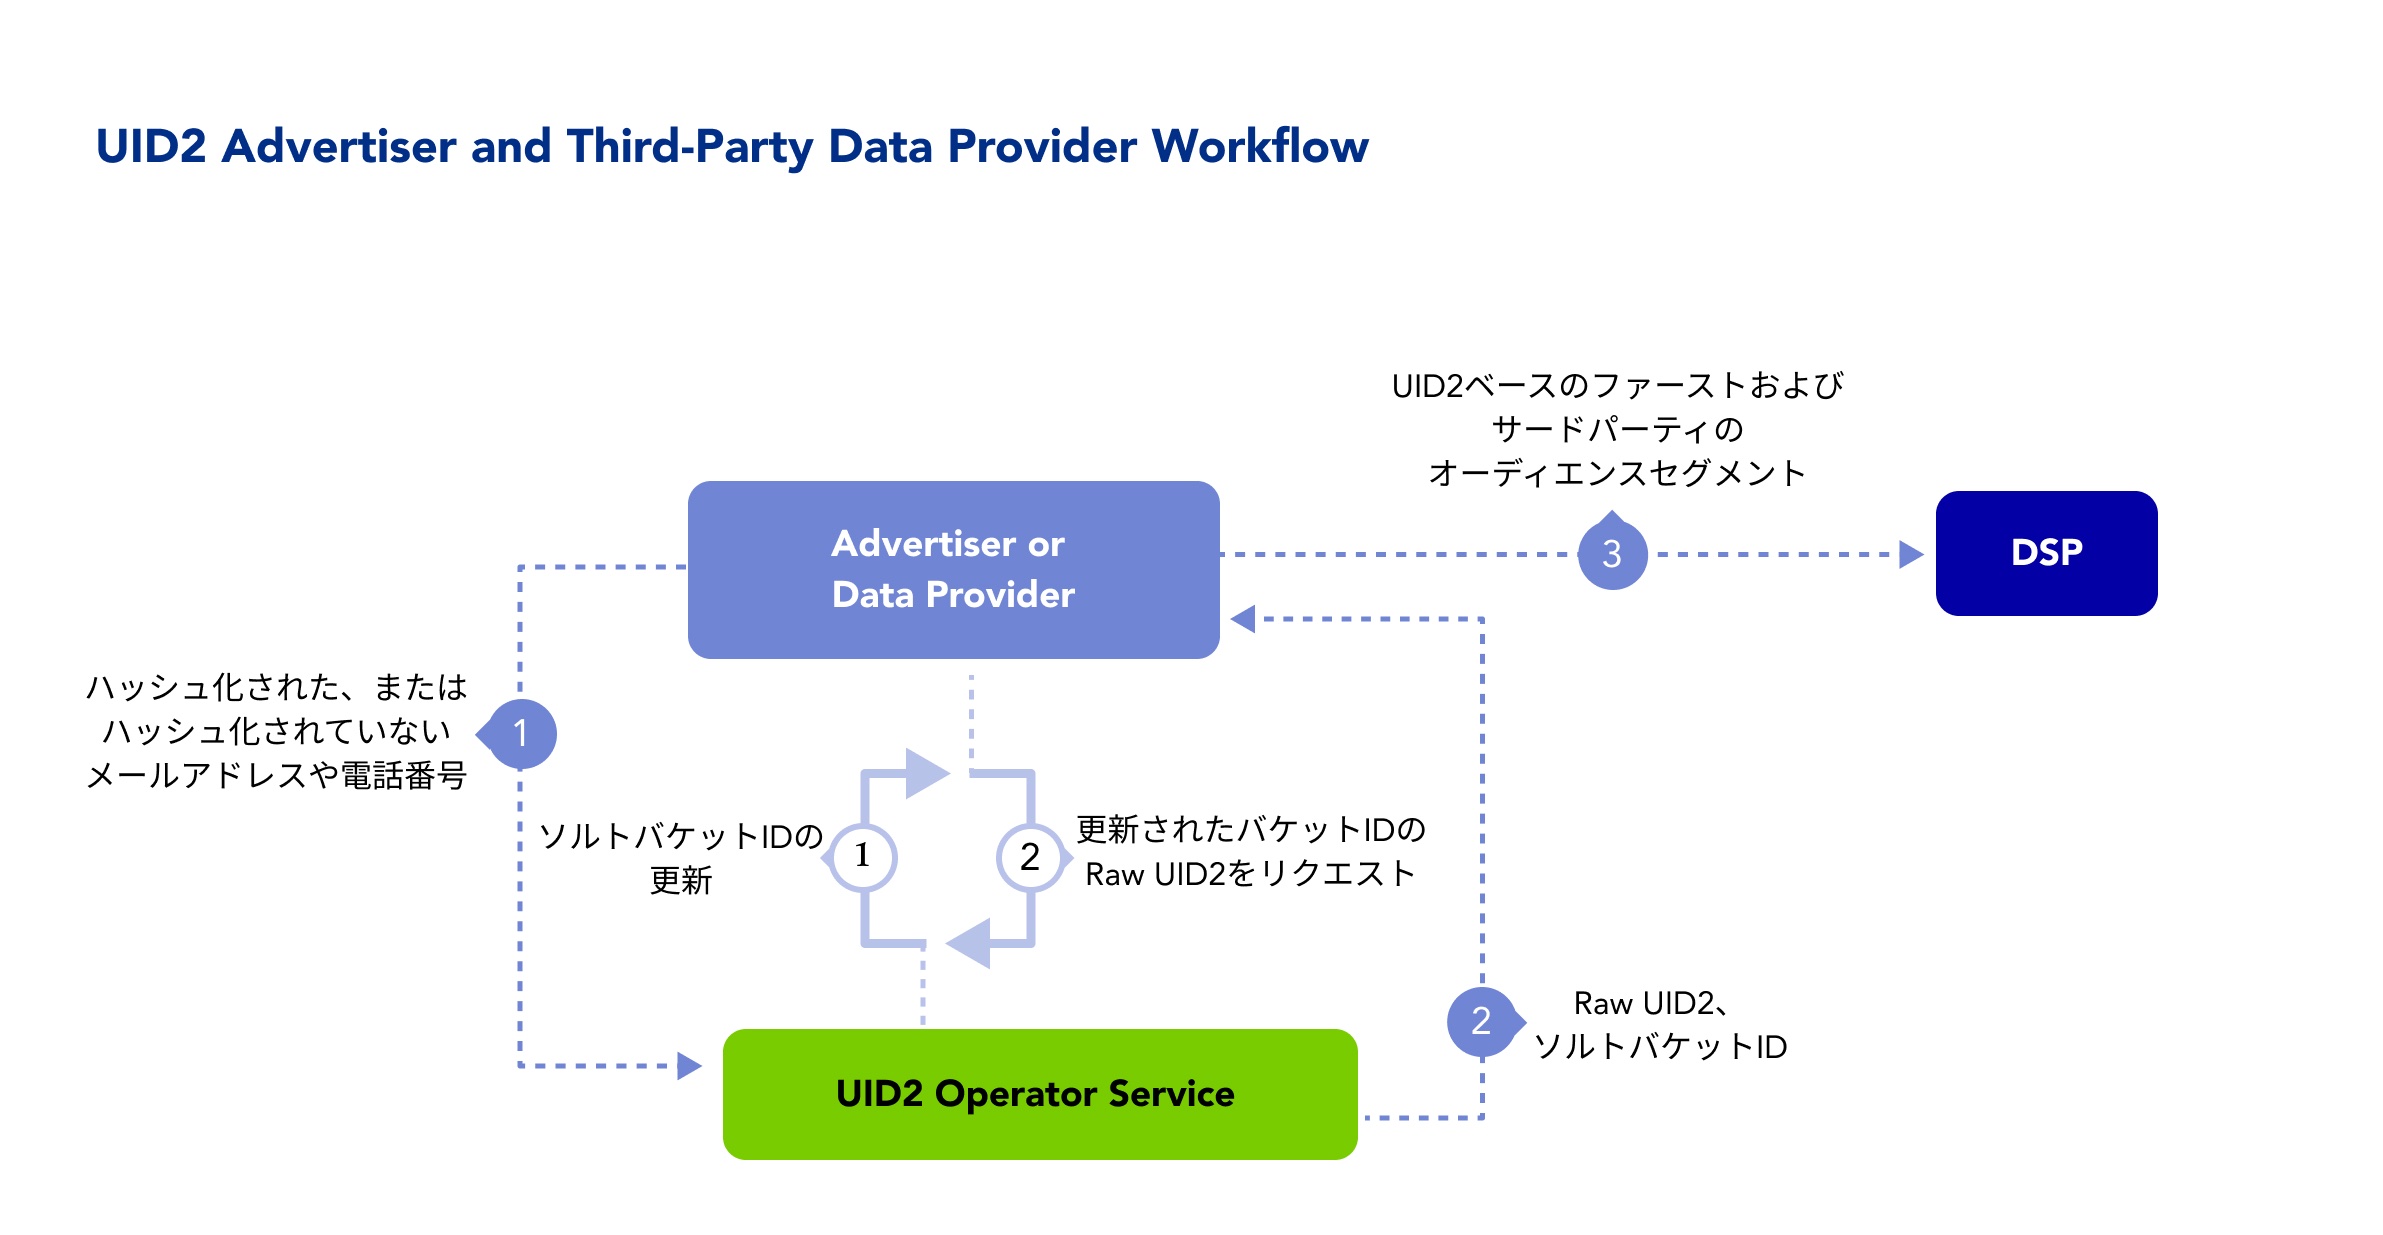 Data Provider Workflow